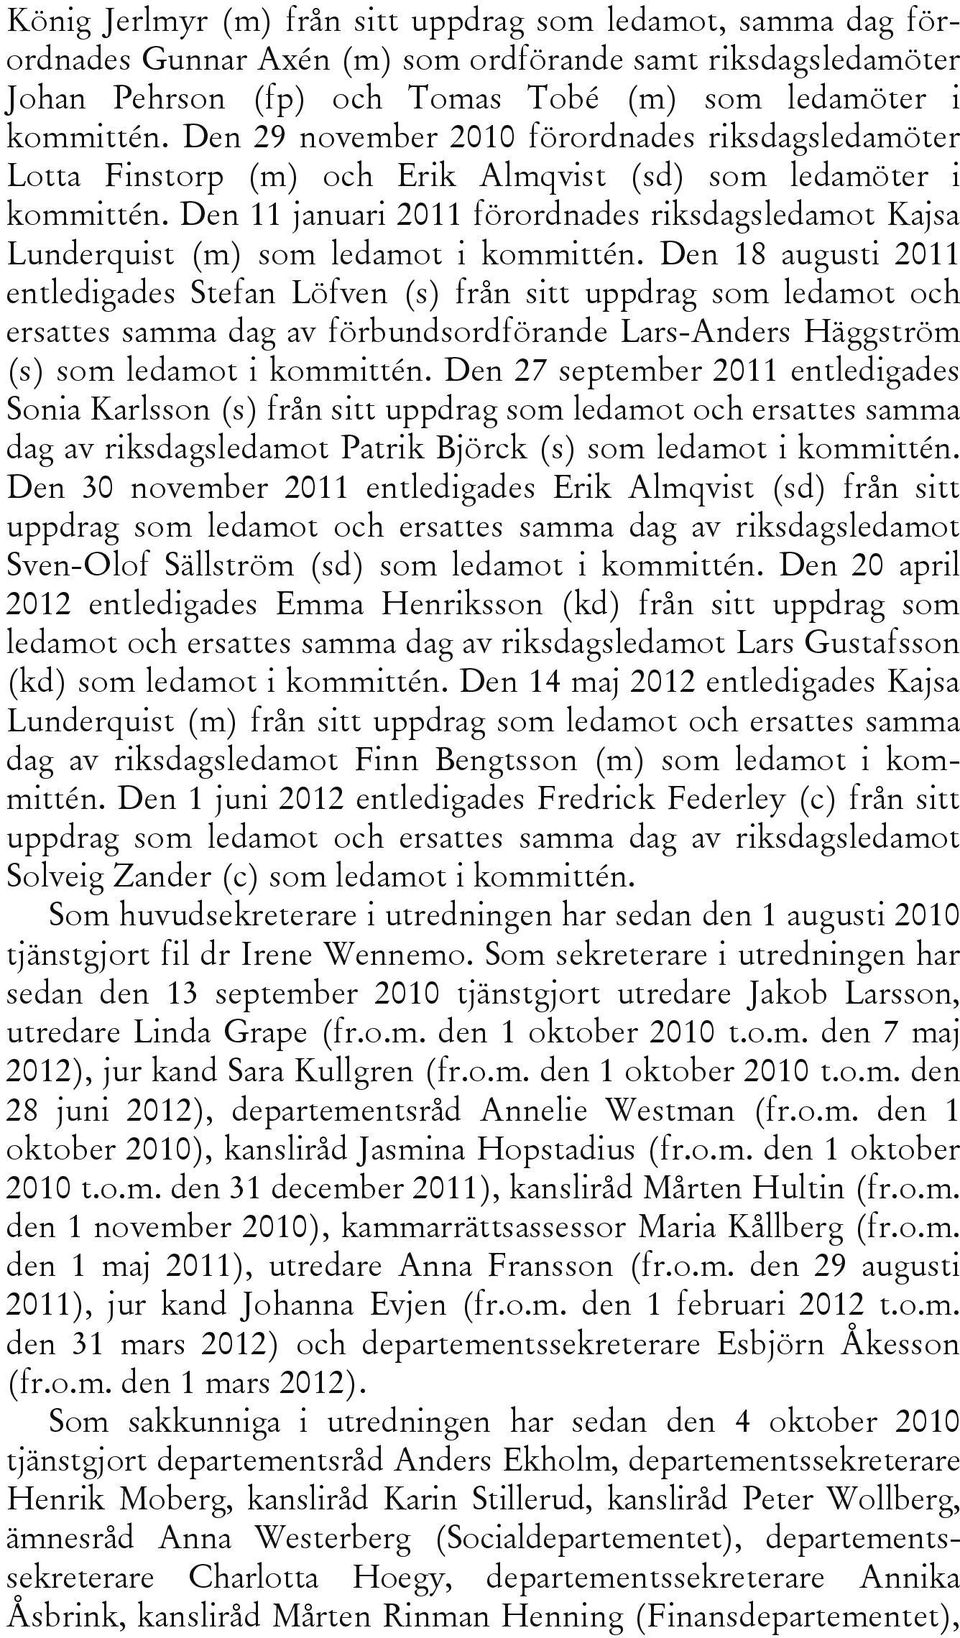 Den 11 januari 2011 förordnades riksdagsledamot Kajsa Lunderquist (m) som ledamot i kommittén.